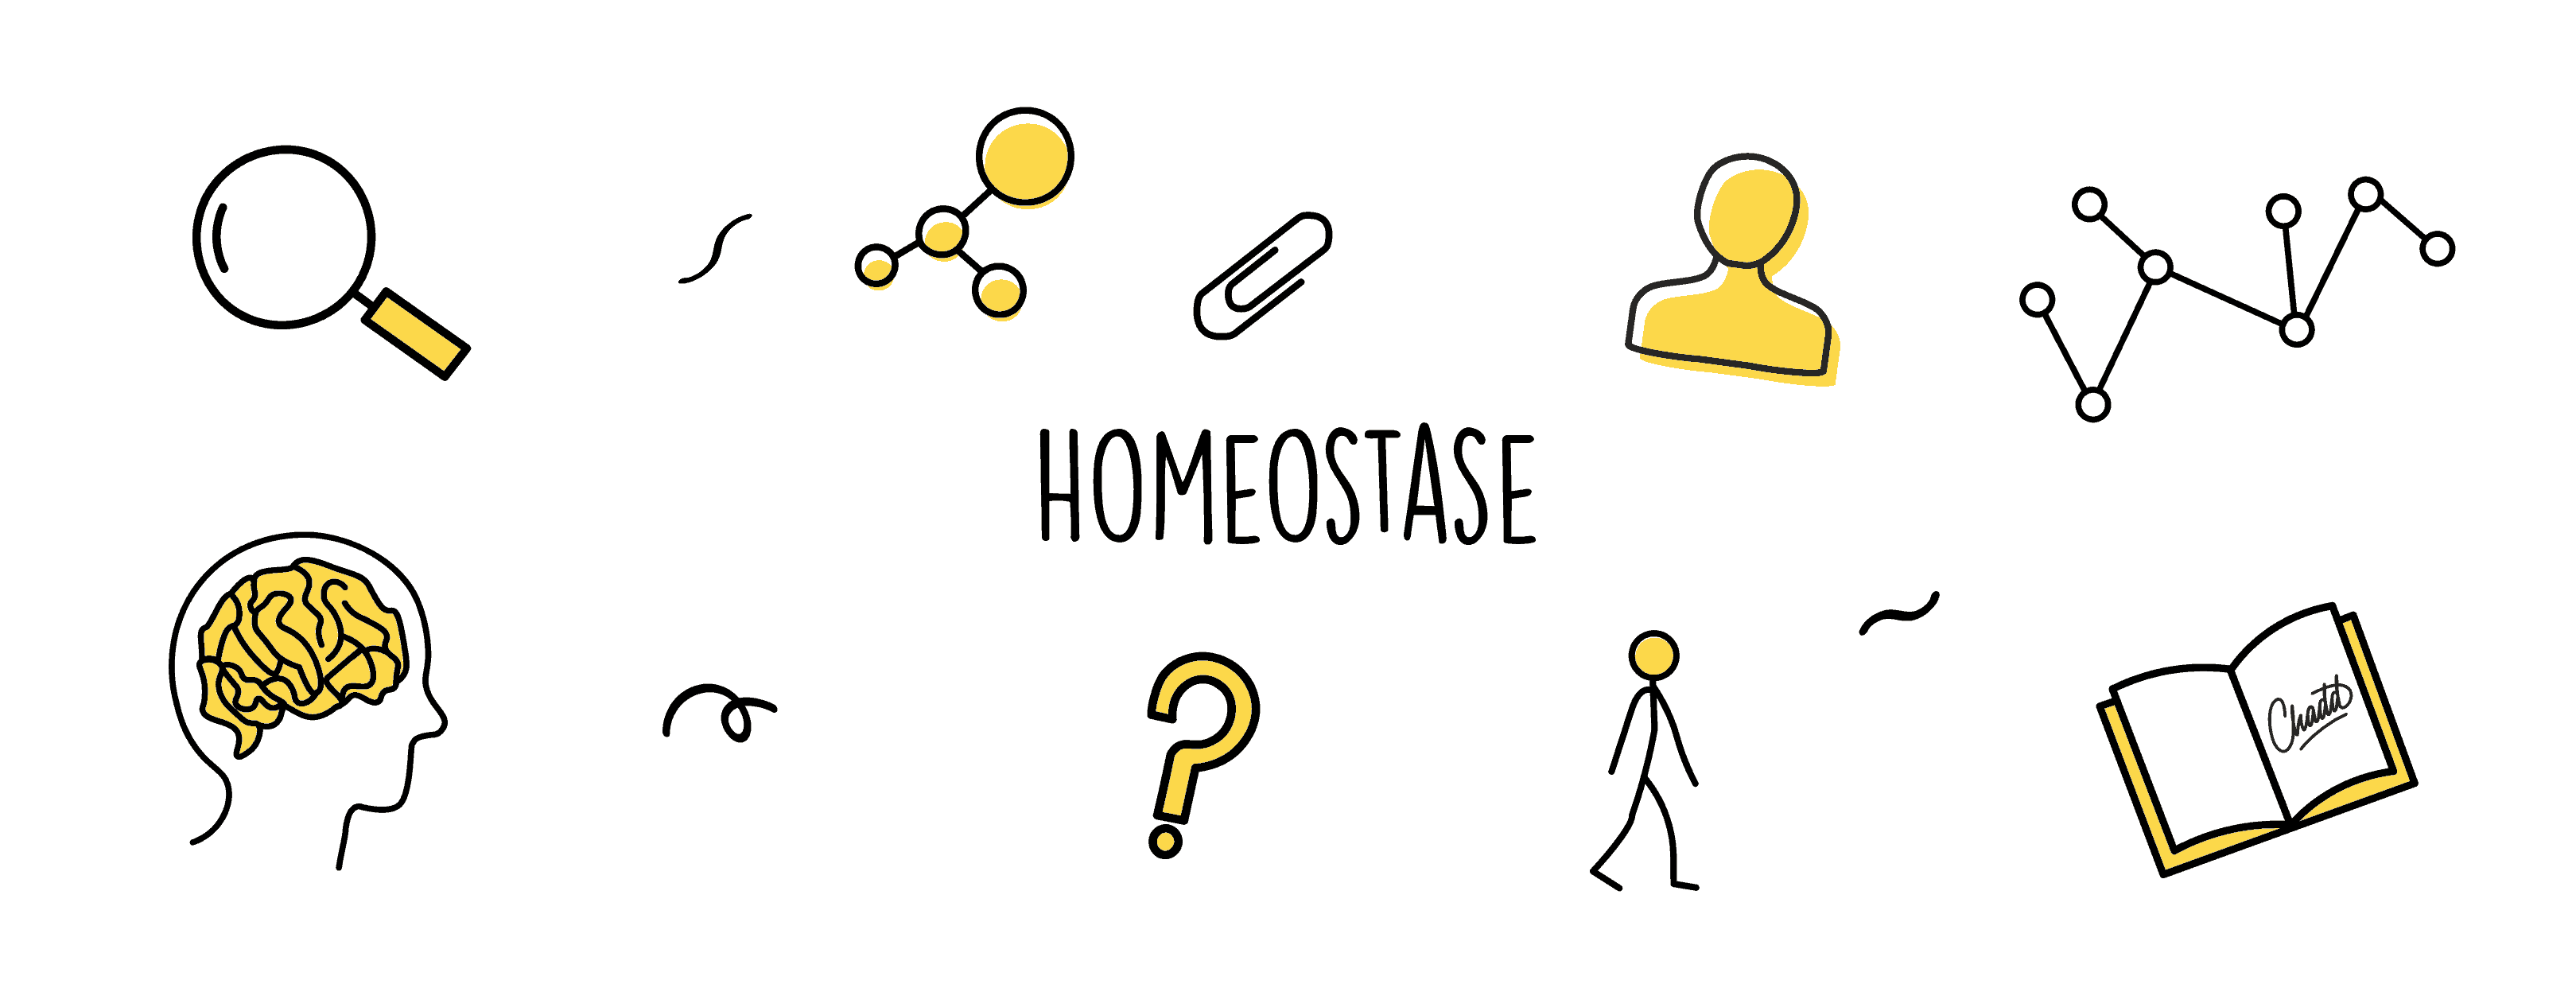 homeostase